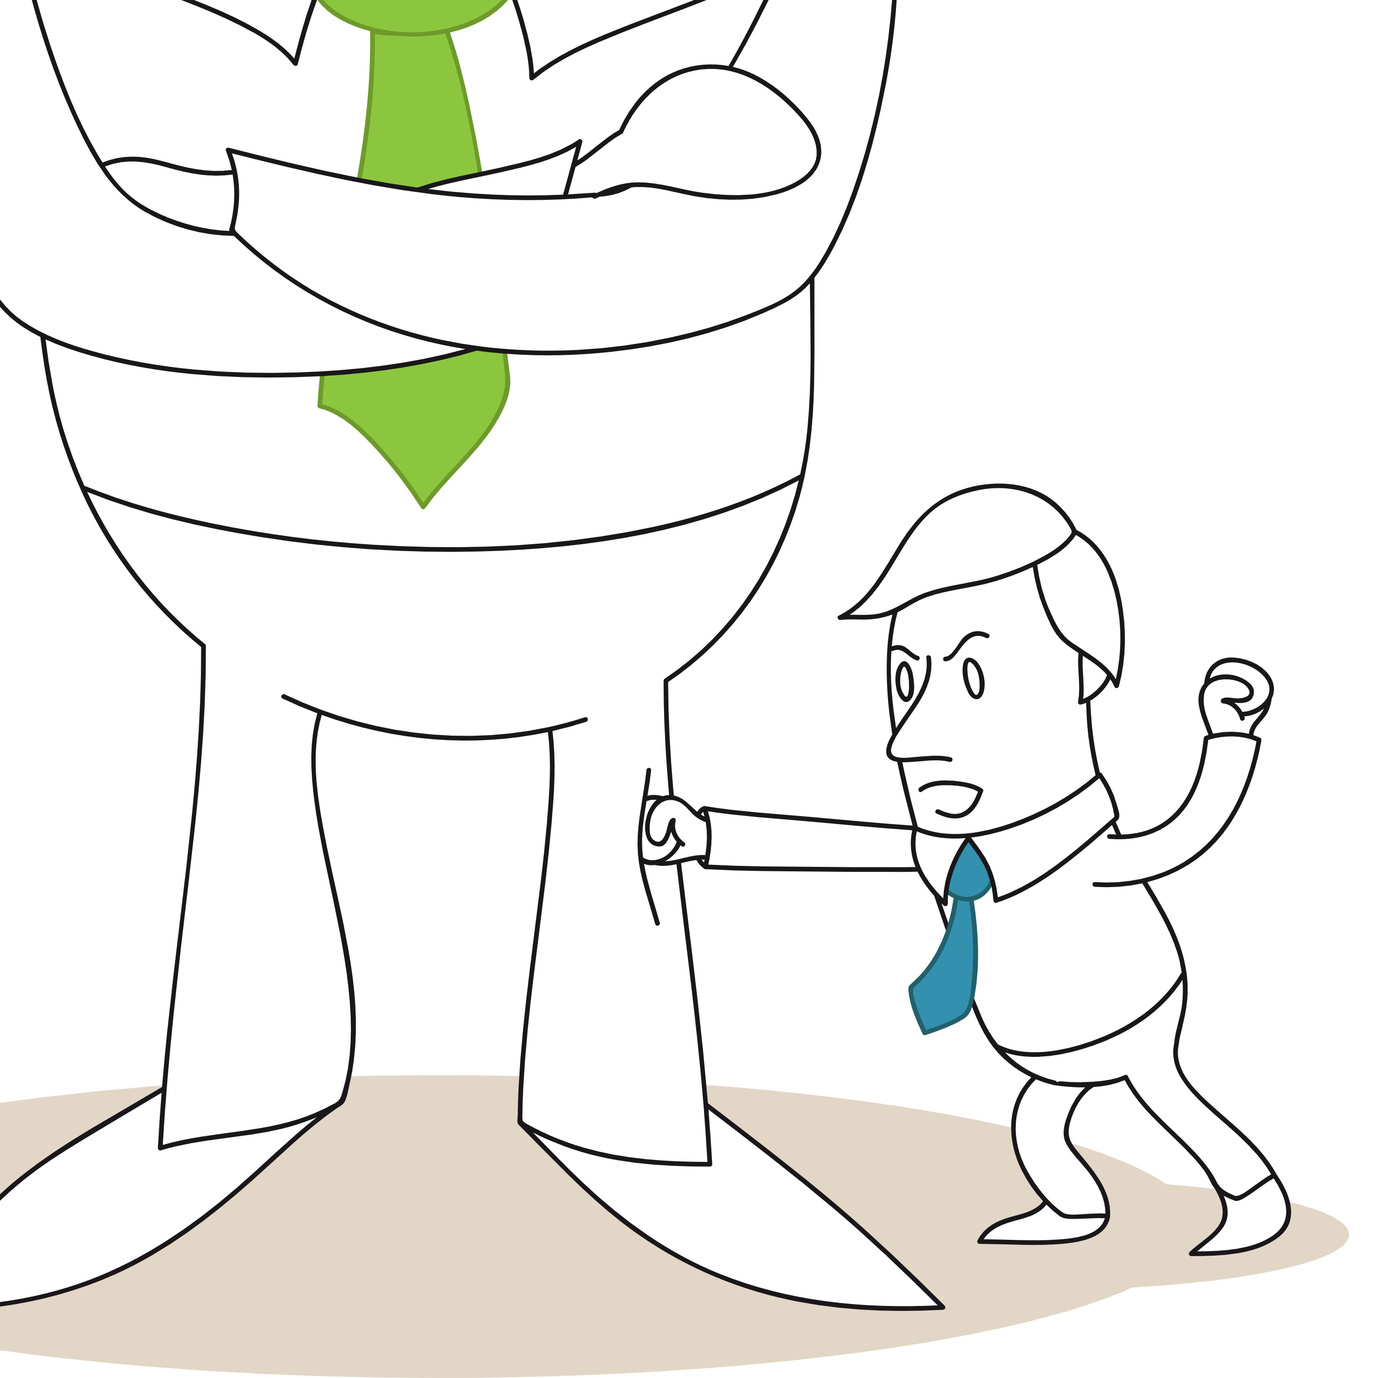 Vergleich in Cartoon Form von David und Goliath im Bezug auf Führungskräfte